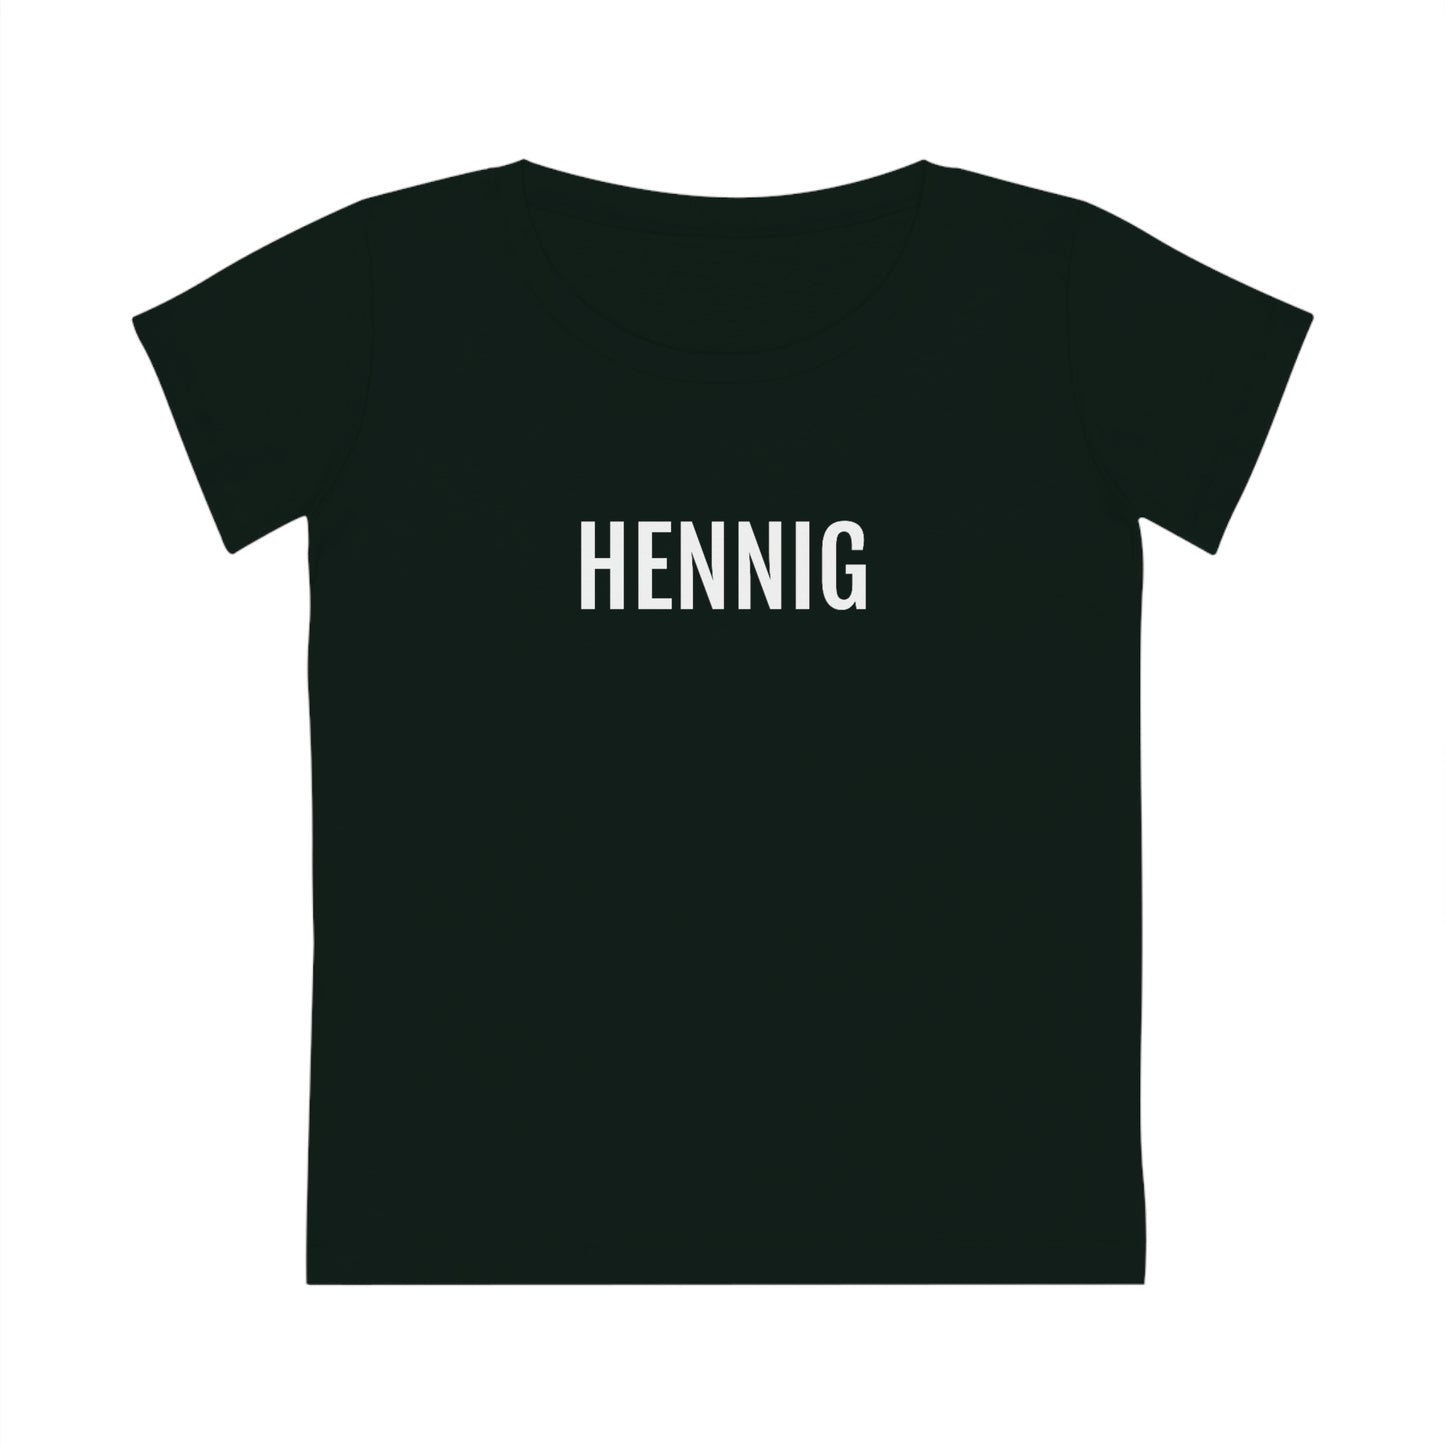 Zwarte T-shirt uit Belgisch Limburg met leuk dialect opschrift